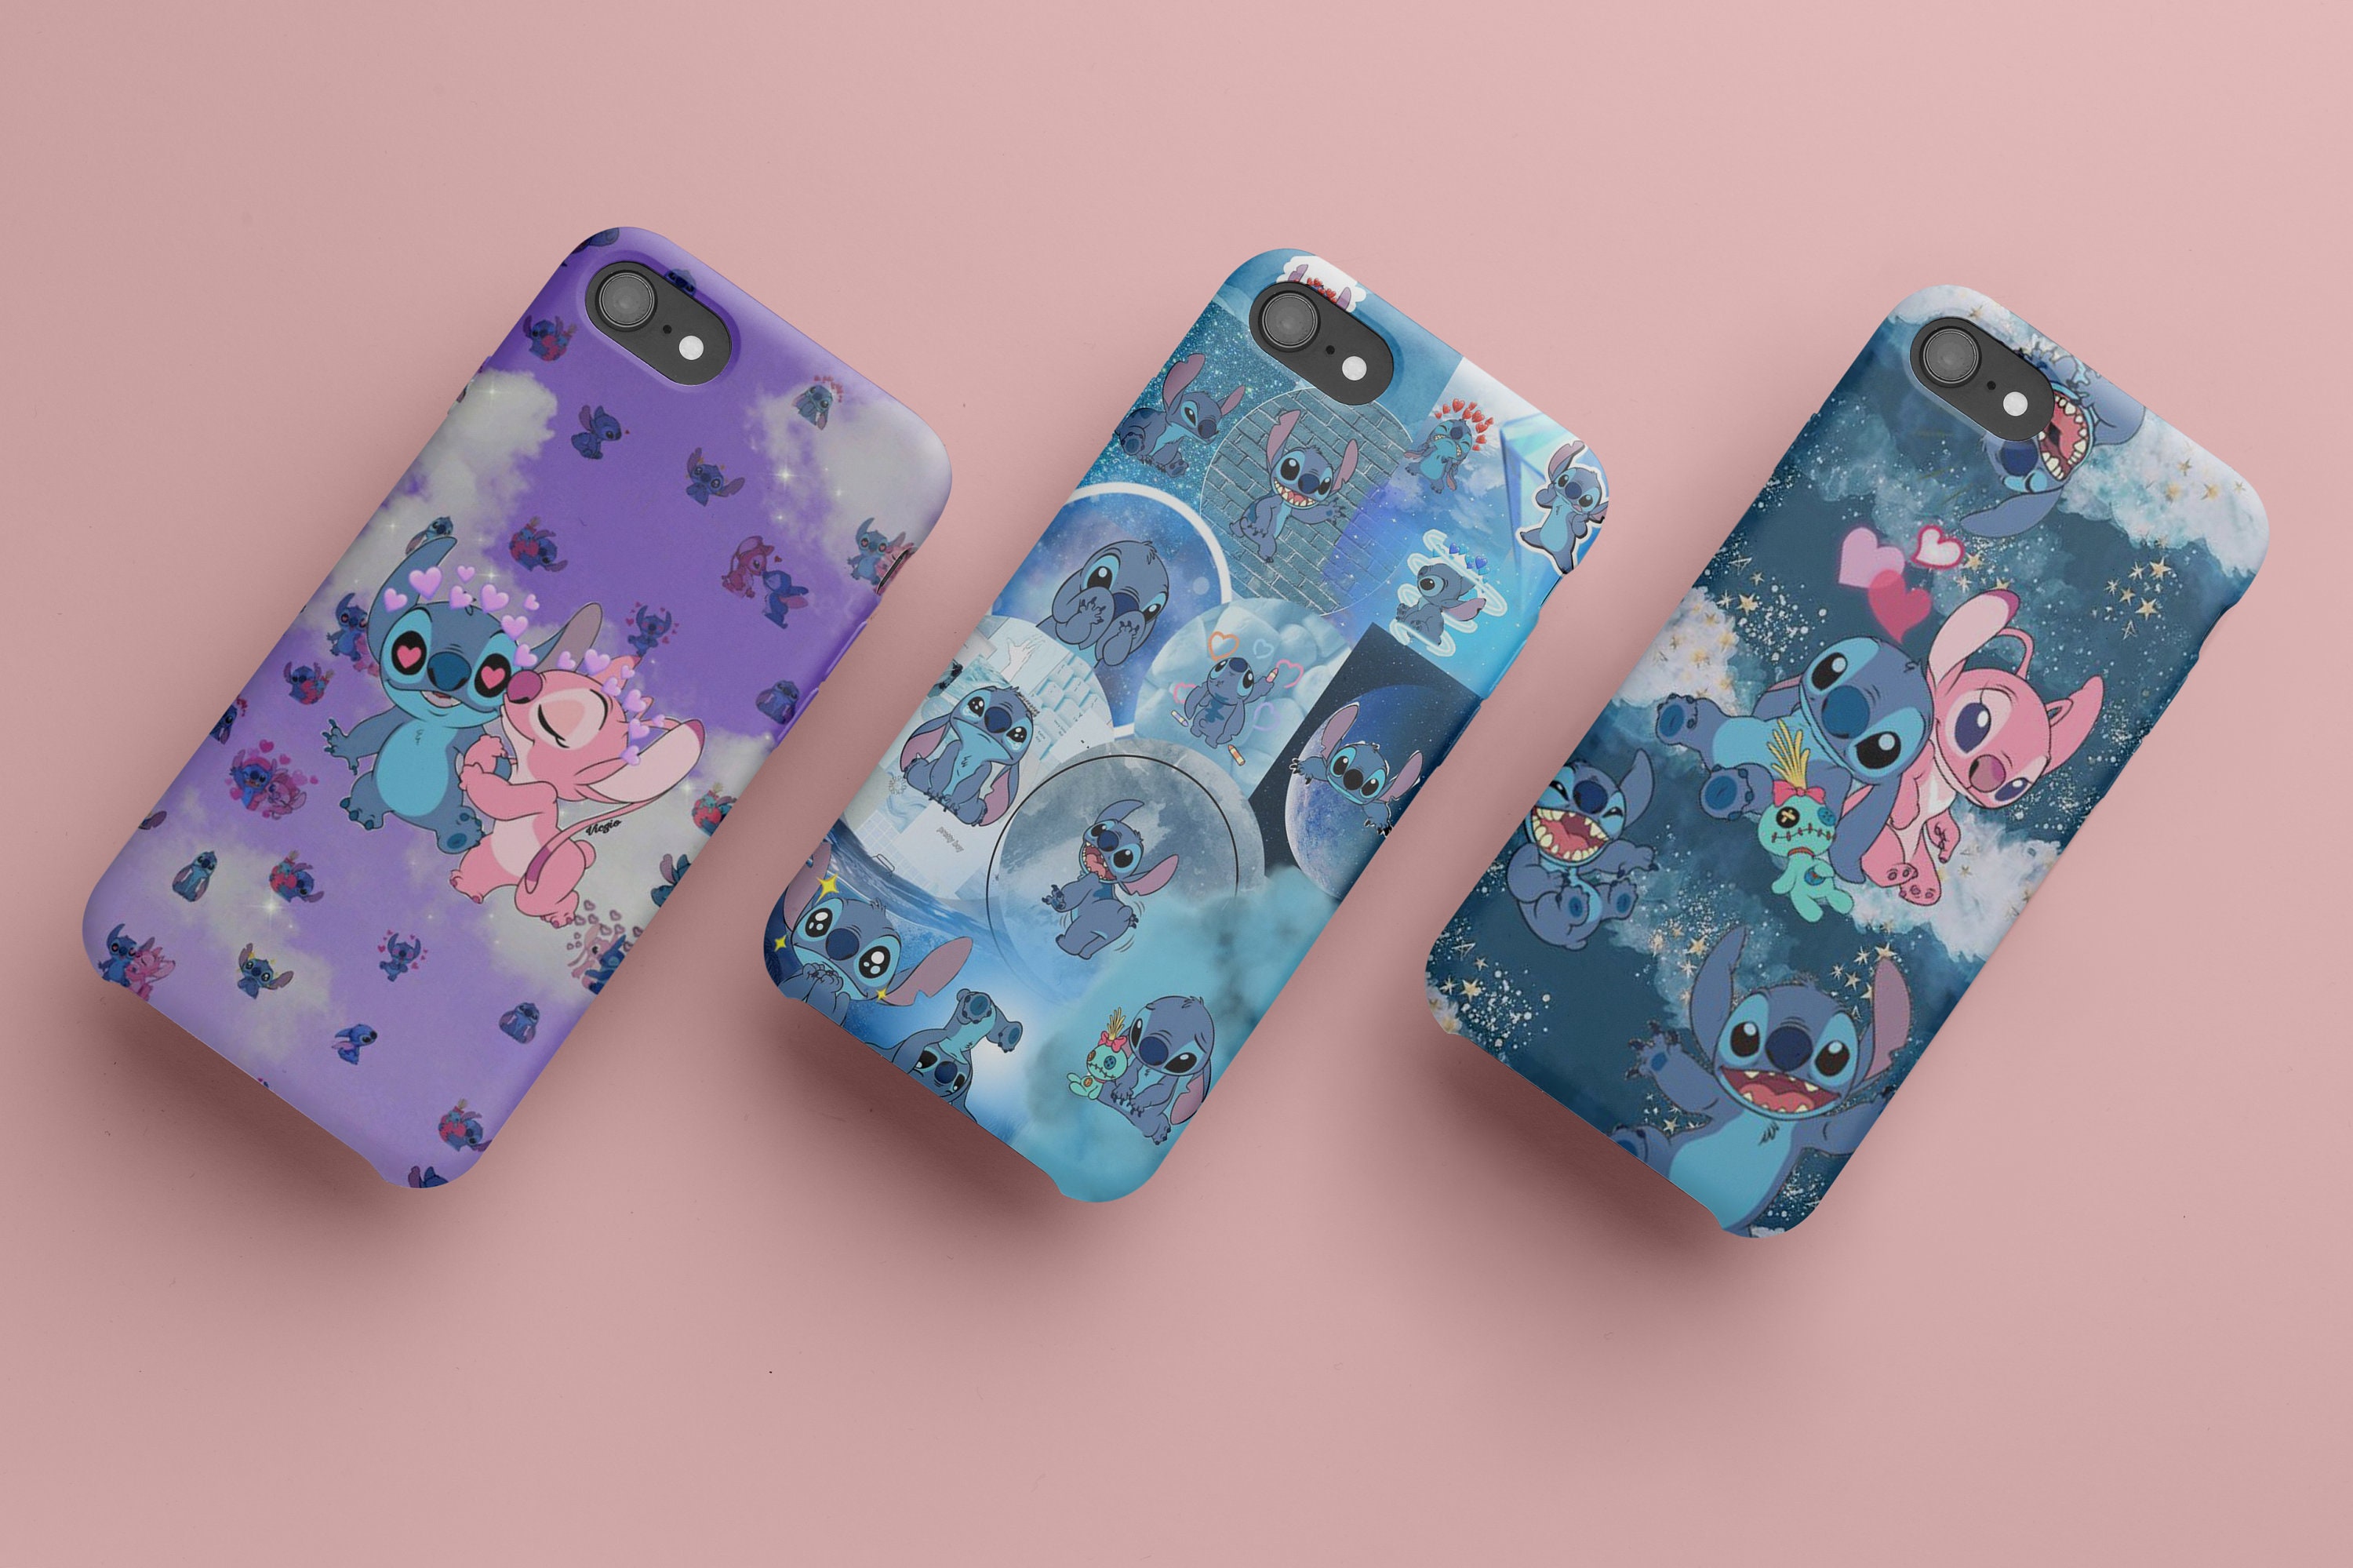 Coque pour iPhone 11 Officielle de Disney Stitch Bleu - Lilo & Stitch